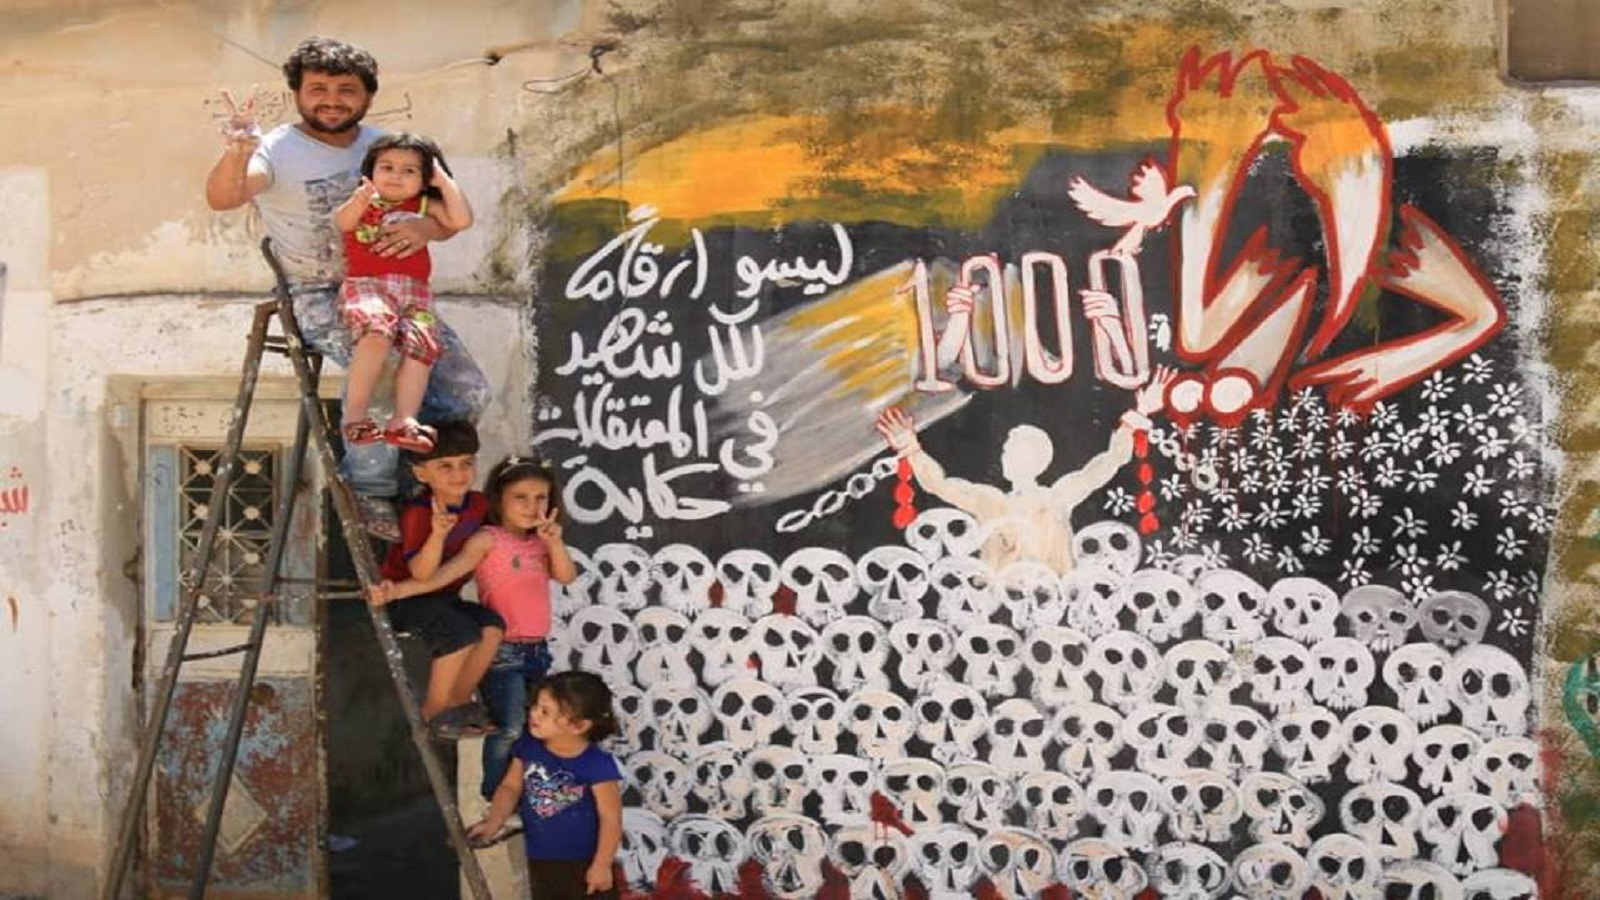 مشروع جديد لـ"الذاكرة الإبداعية للثورة السورية"..بمواجهة سردية المنتصر